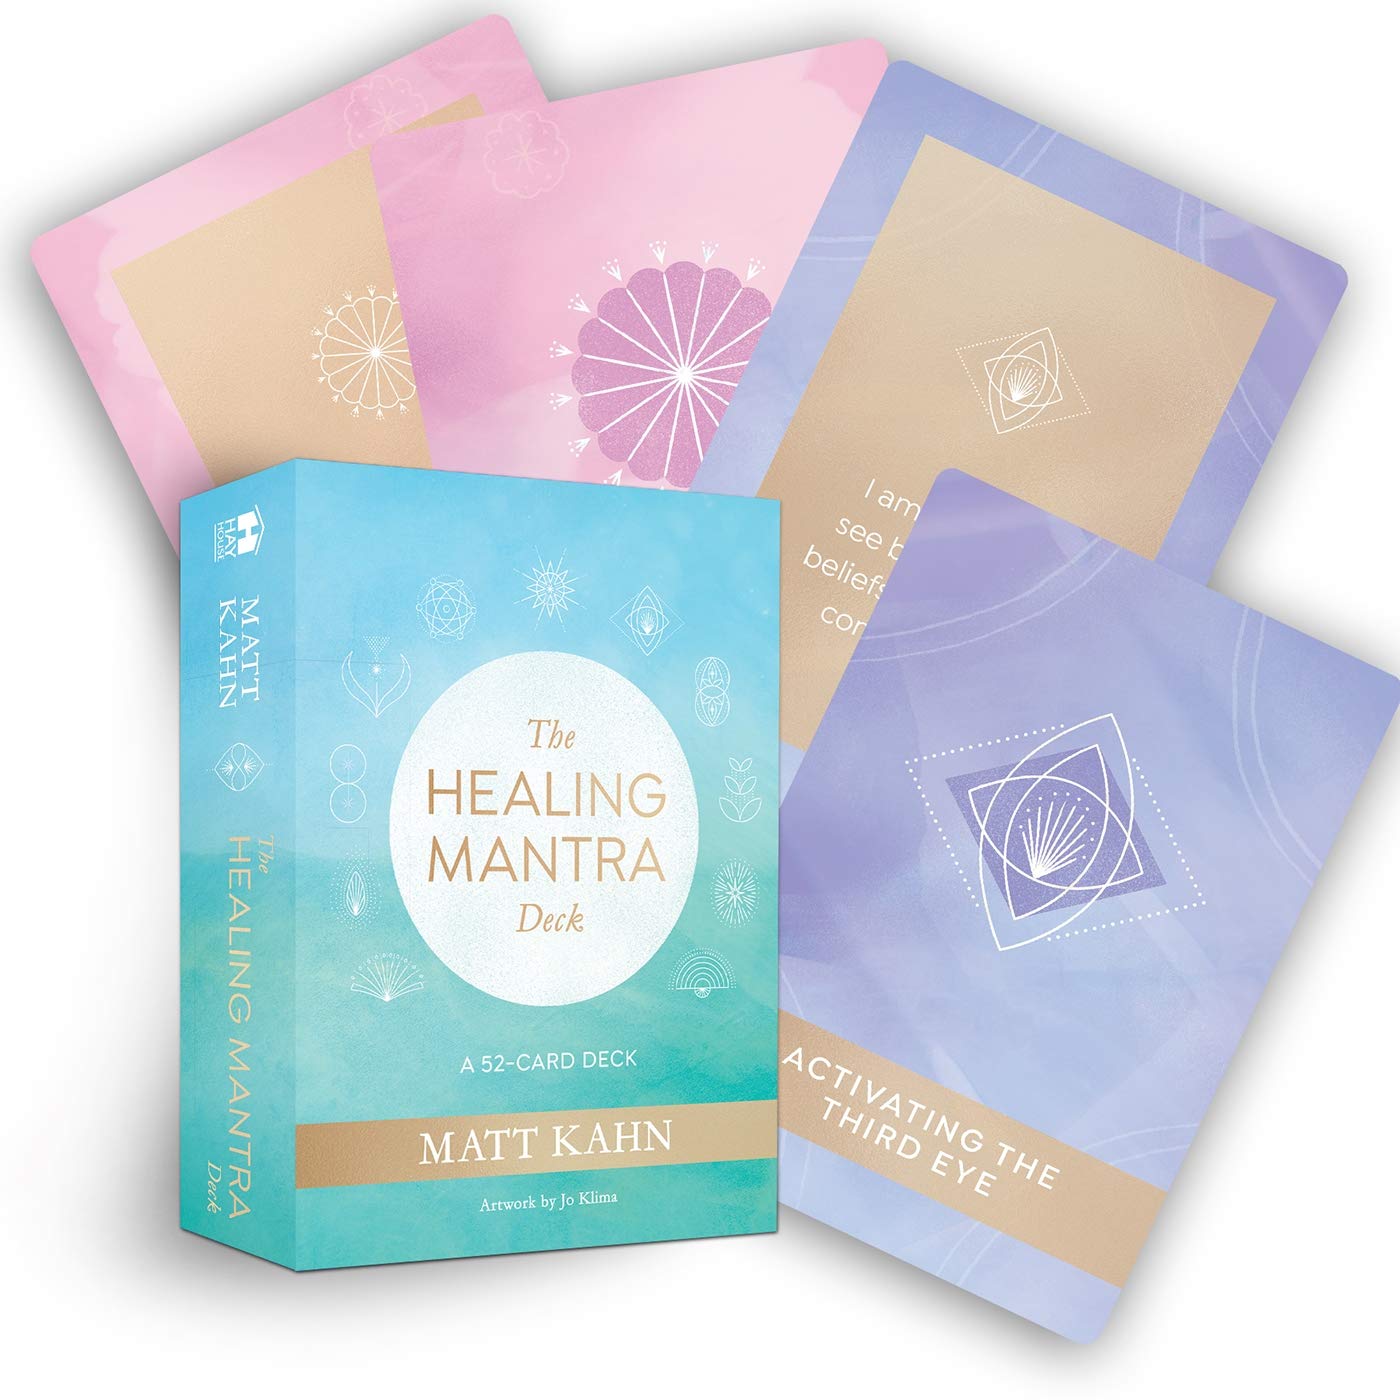 The Healing Mantra Deck - Matt Kahn